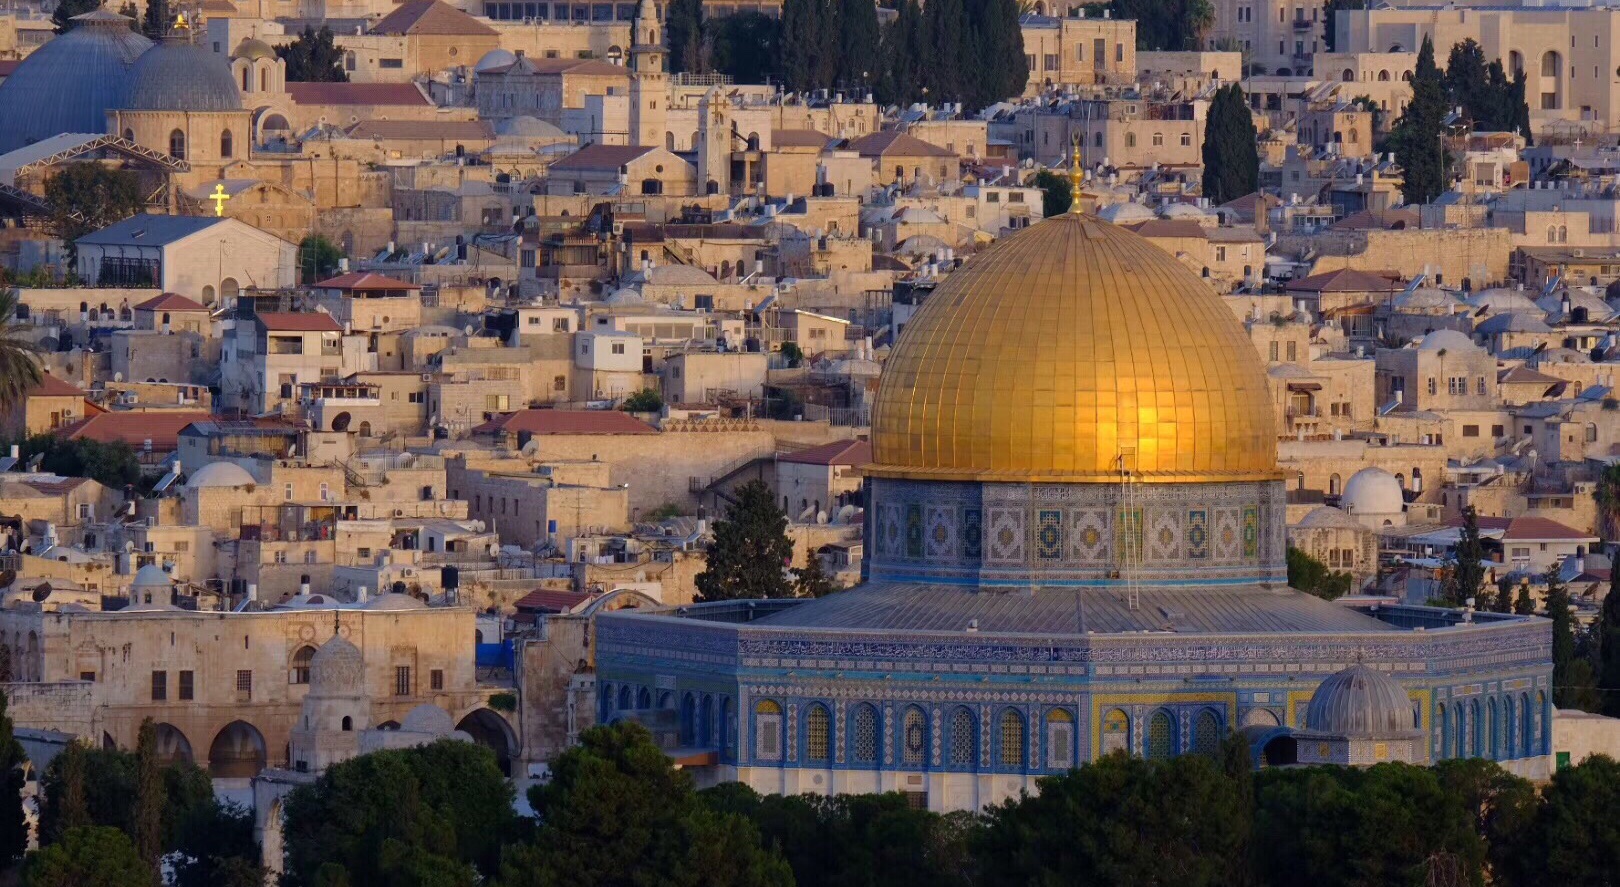 【携程攻略】耶路撒冷圣殿山景点,金色圆顶清真寺就是圣殿山的标志了， 山下就是著名的哭墙。圣殿山的…